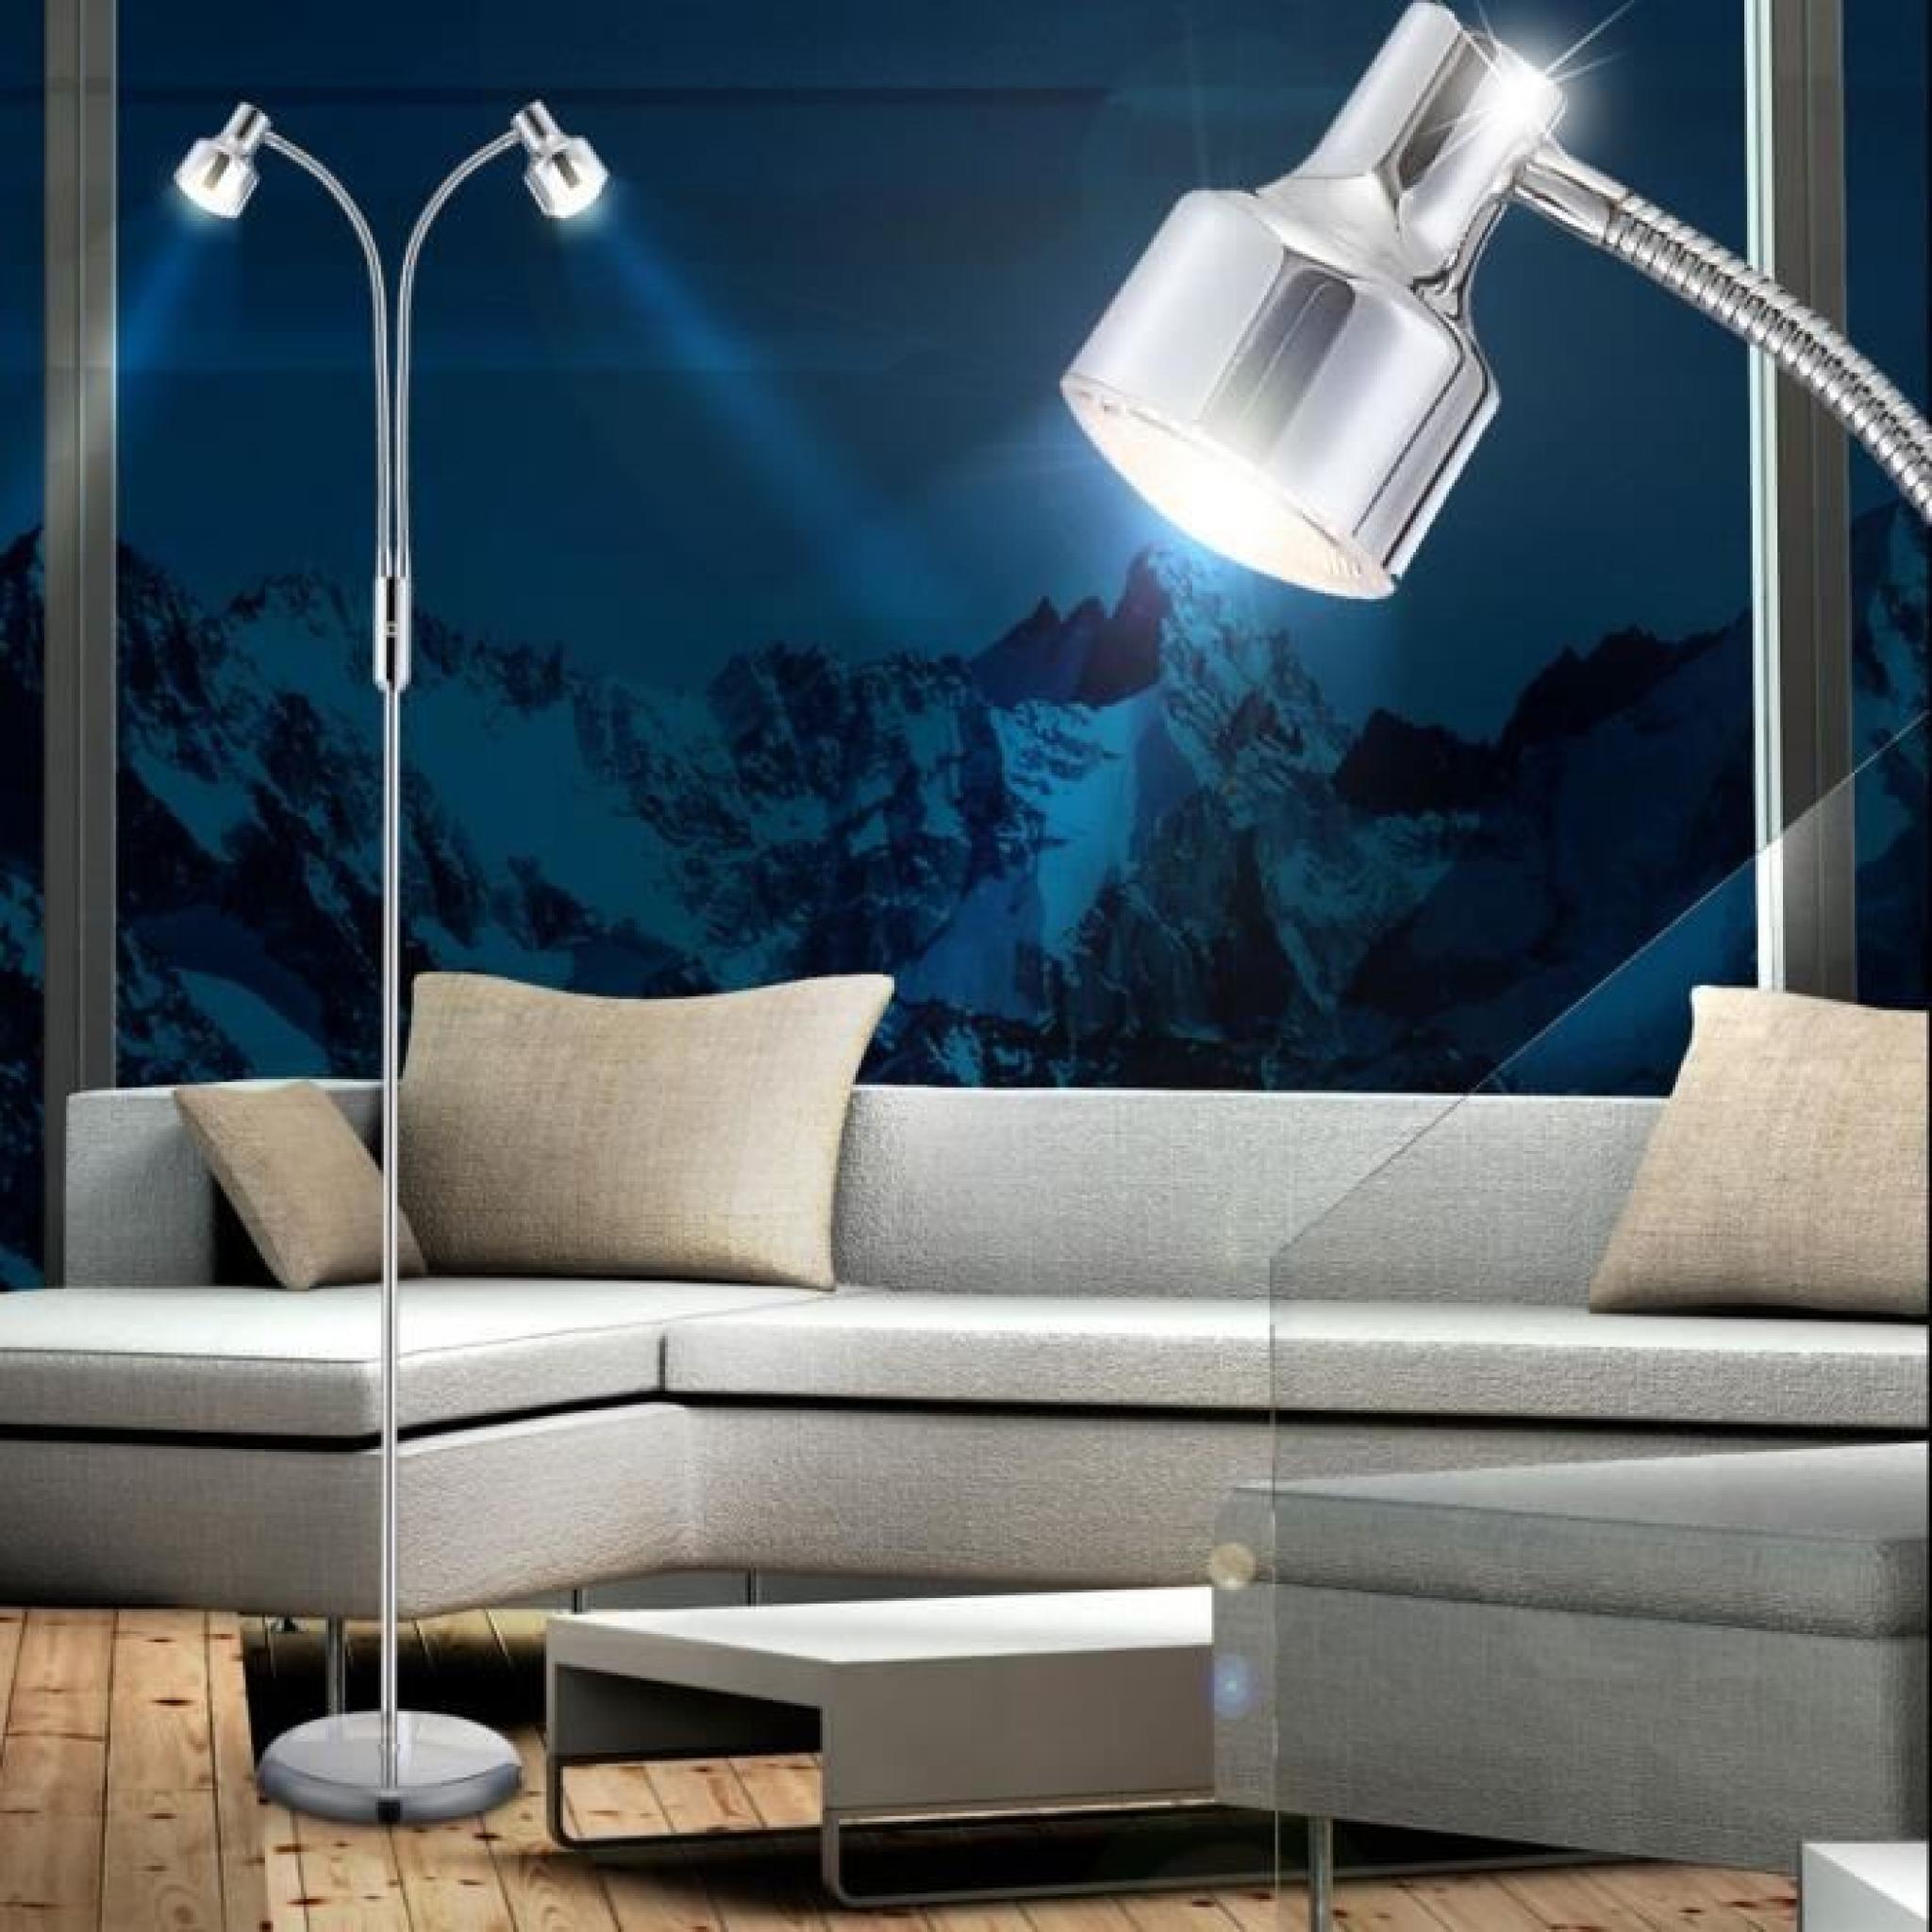 Lampadaire à vasque DEL 8 watts luminaire lampe flexo interrupteur salle de séjour LED pas cher